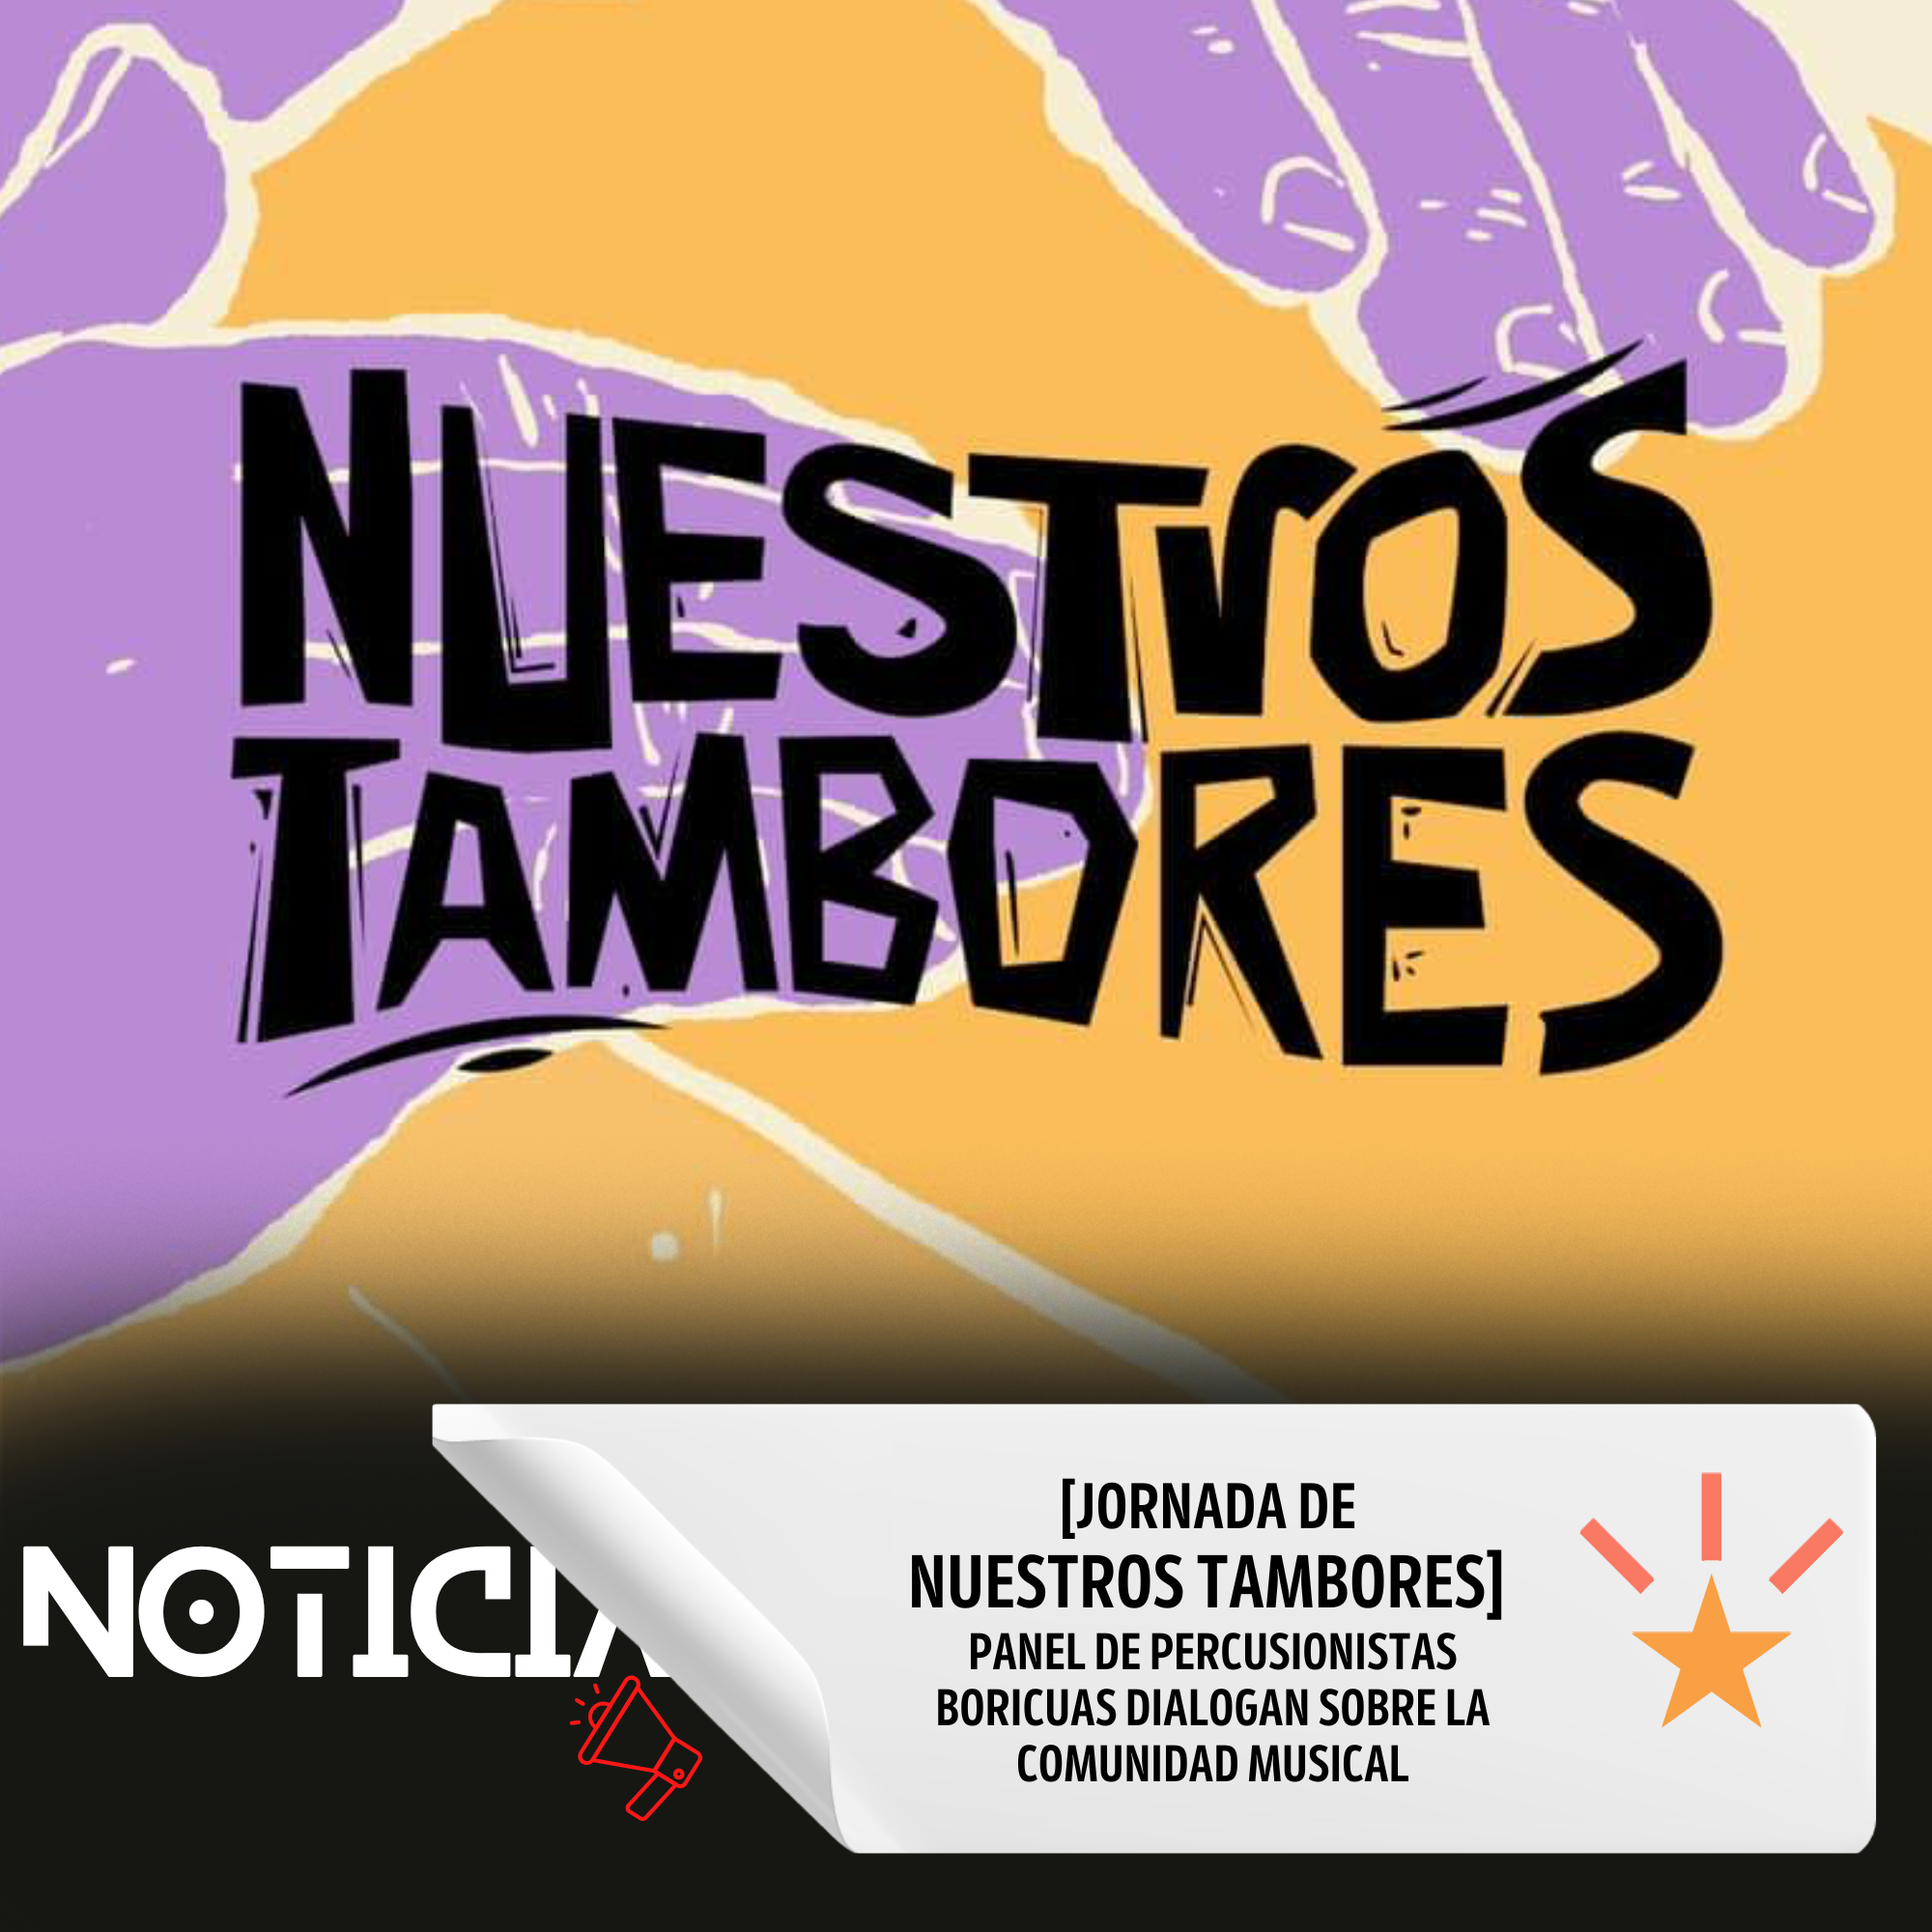 [jornada de NUESTROS TAMBORES] PANEL DE PERCUSIONISTAS BORICUAS DIALOGAN SOBRE LA COMUNIDAD MUSICAL